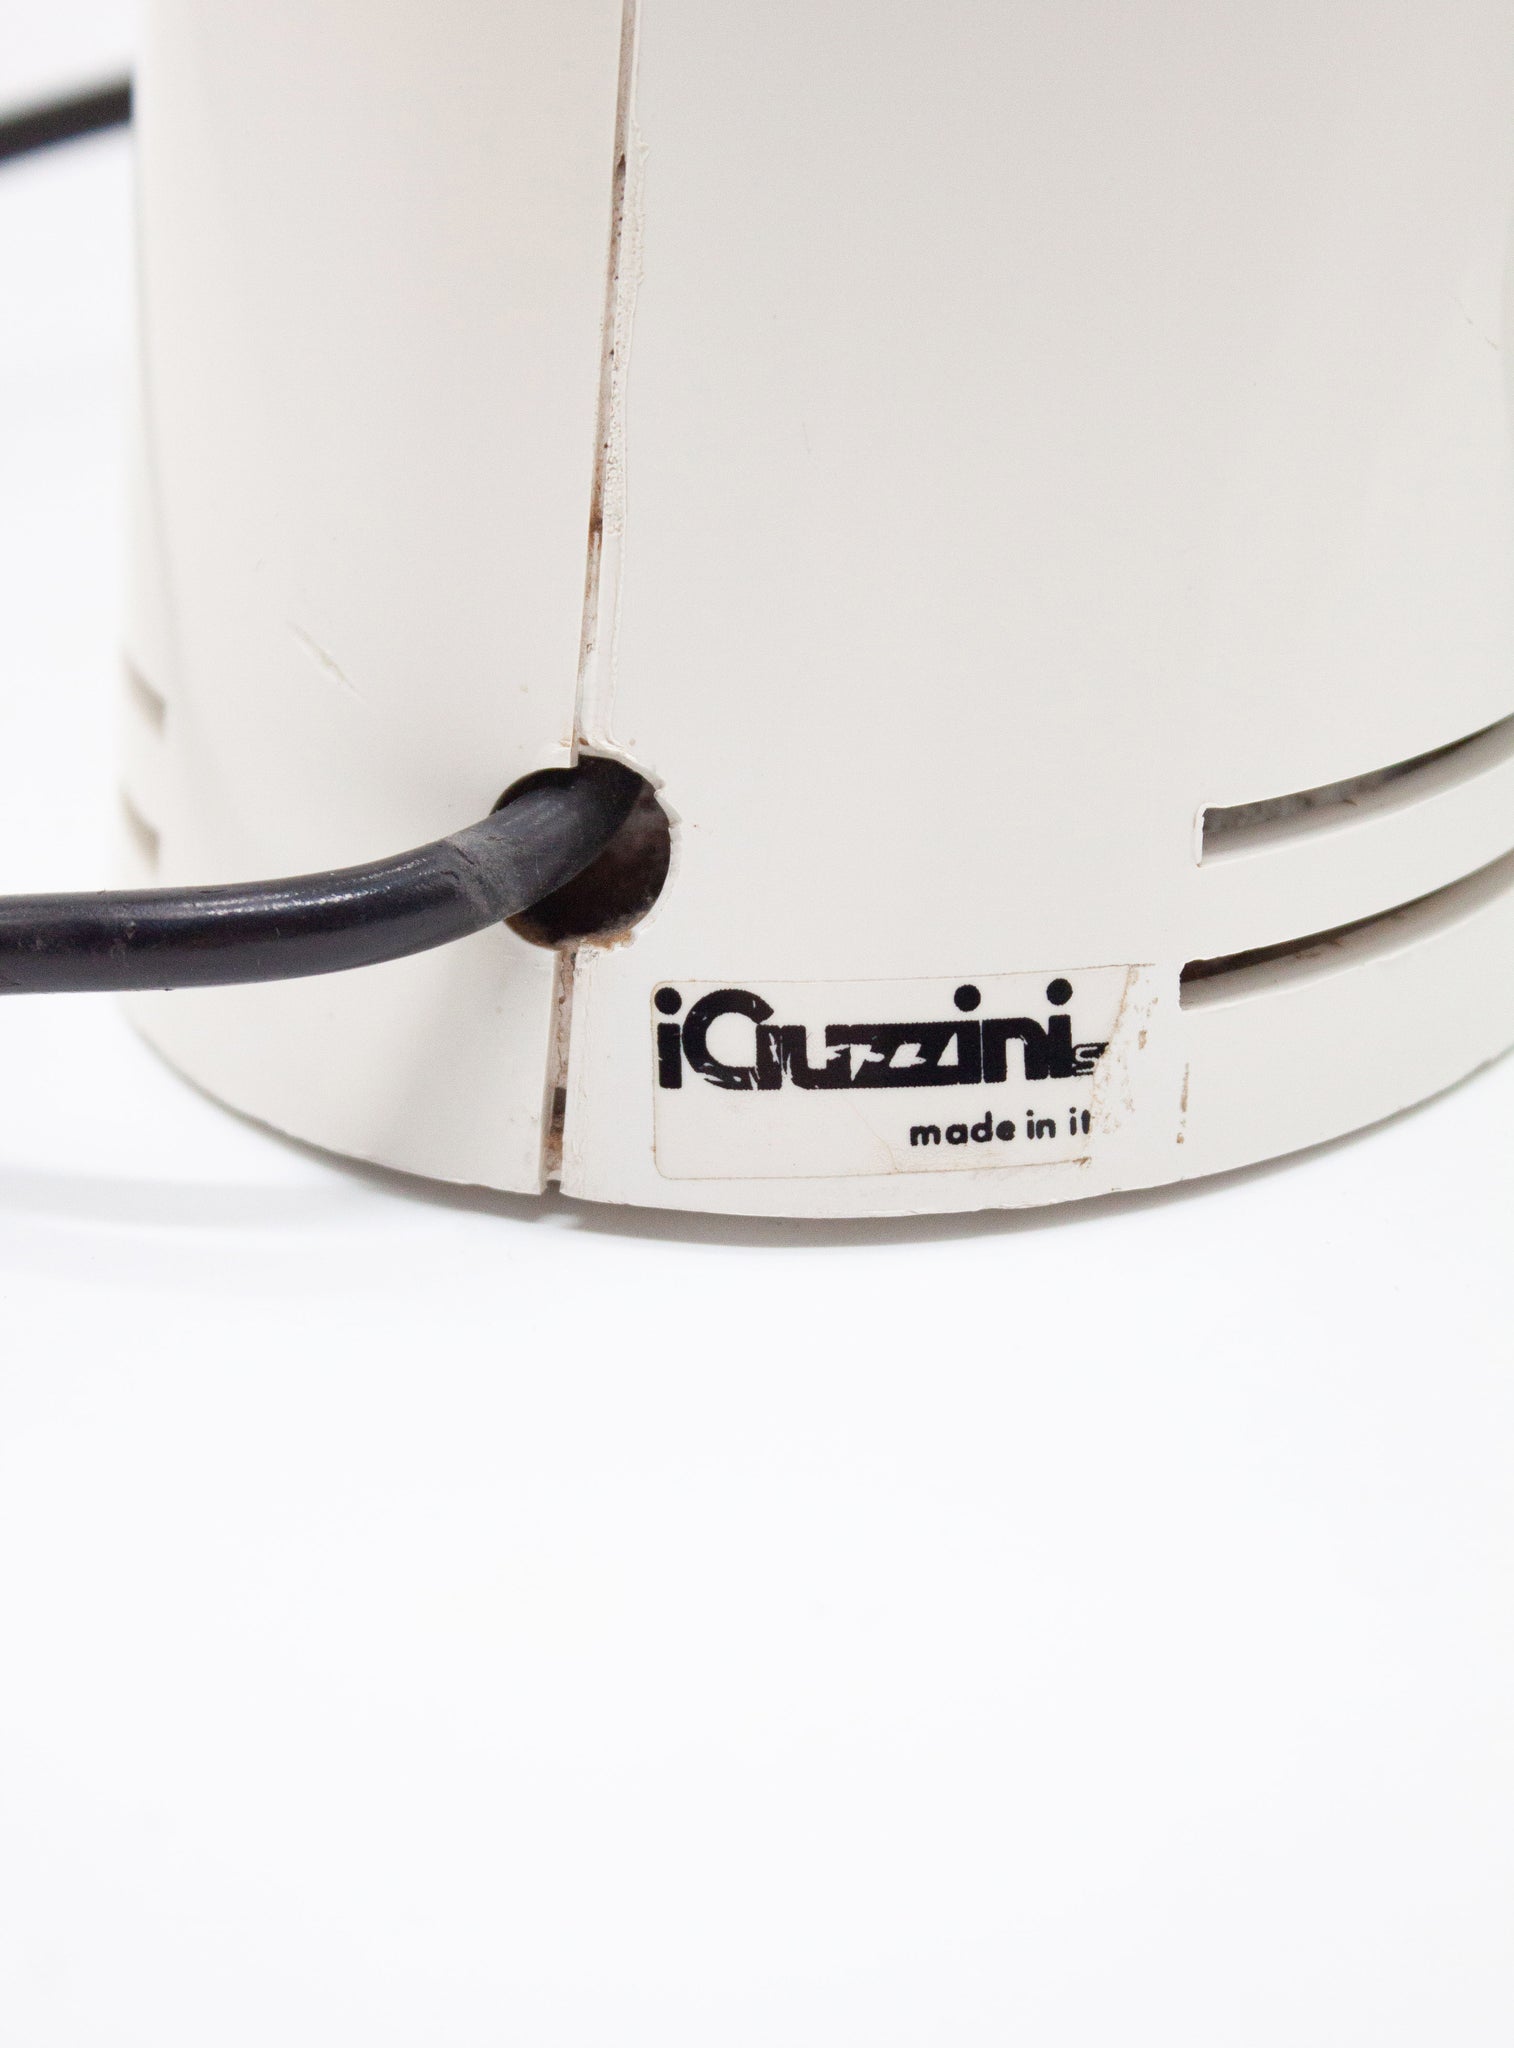 iGuzzini Sorella Desk Lamp by Harvey Guzzini